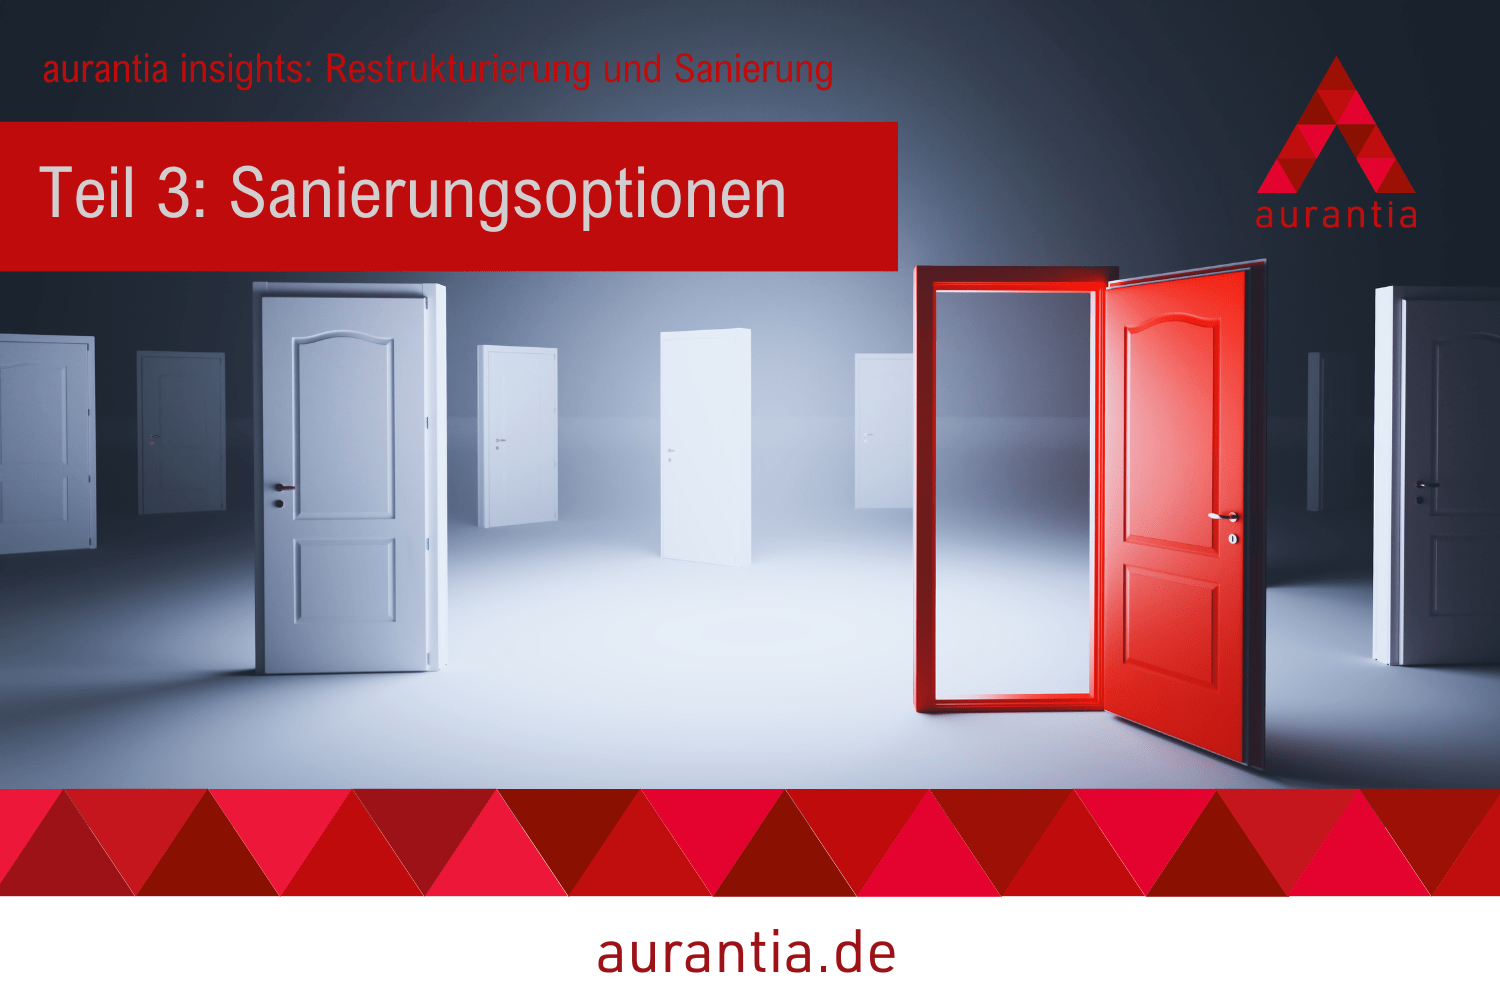 Restrukturierung und Sanierung. Alternativen zur Insolvenz. aurantia.de